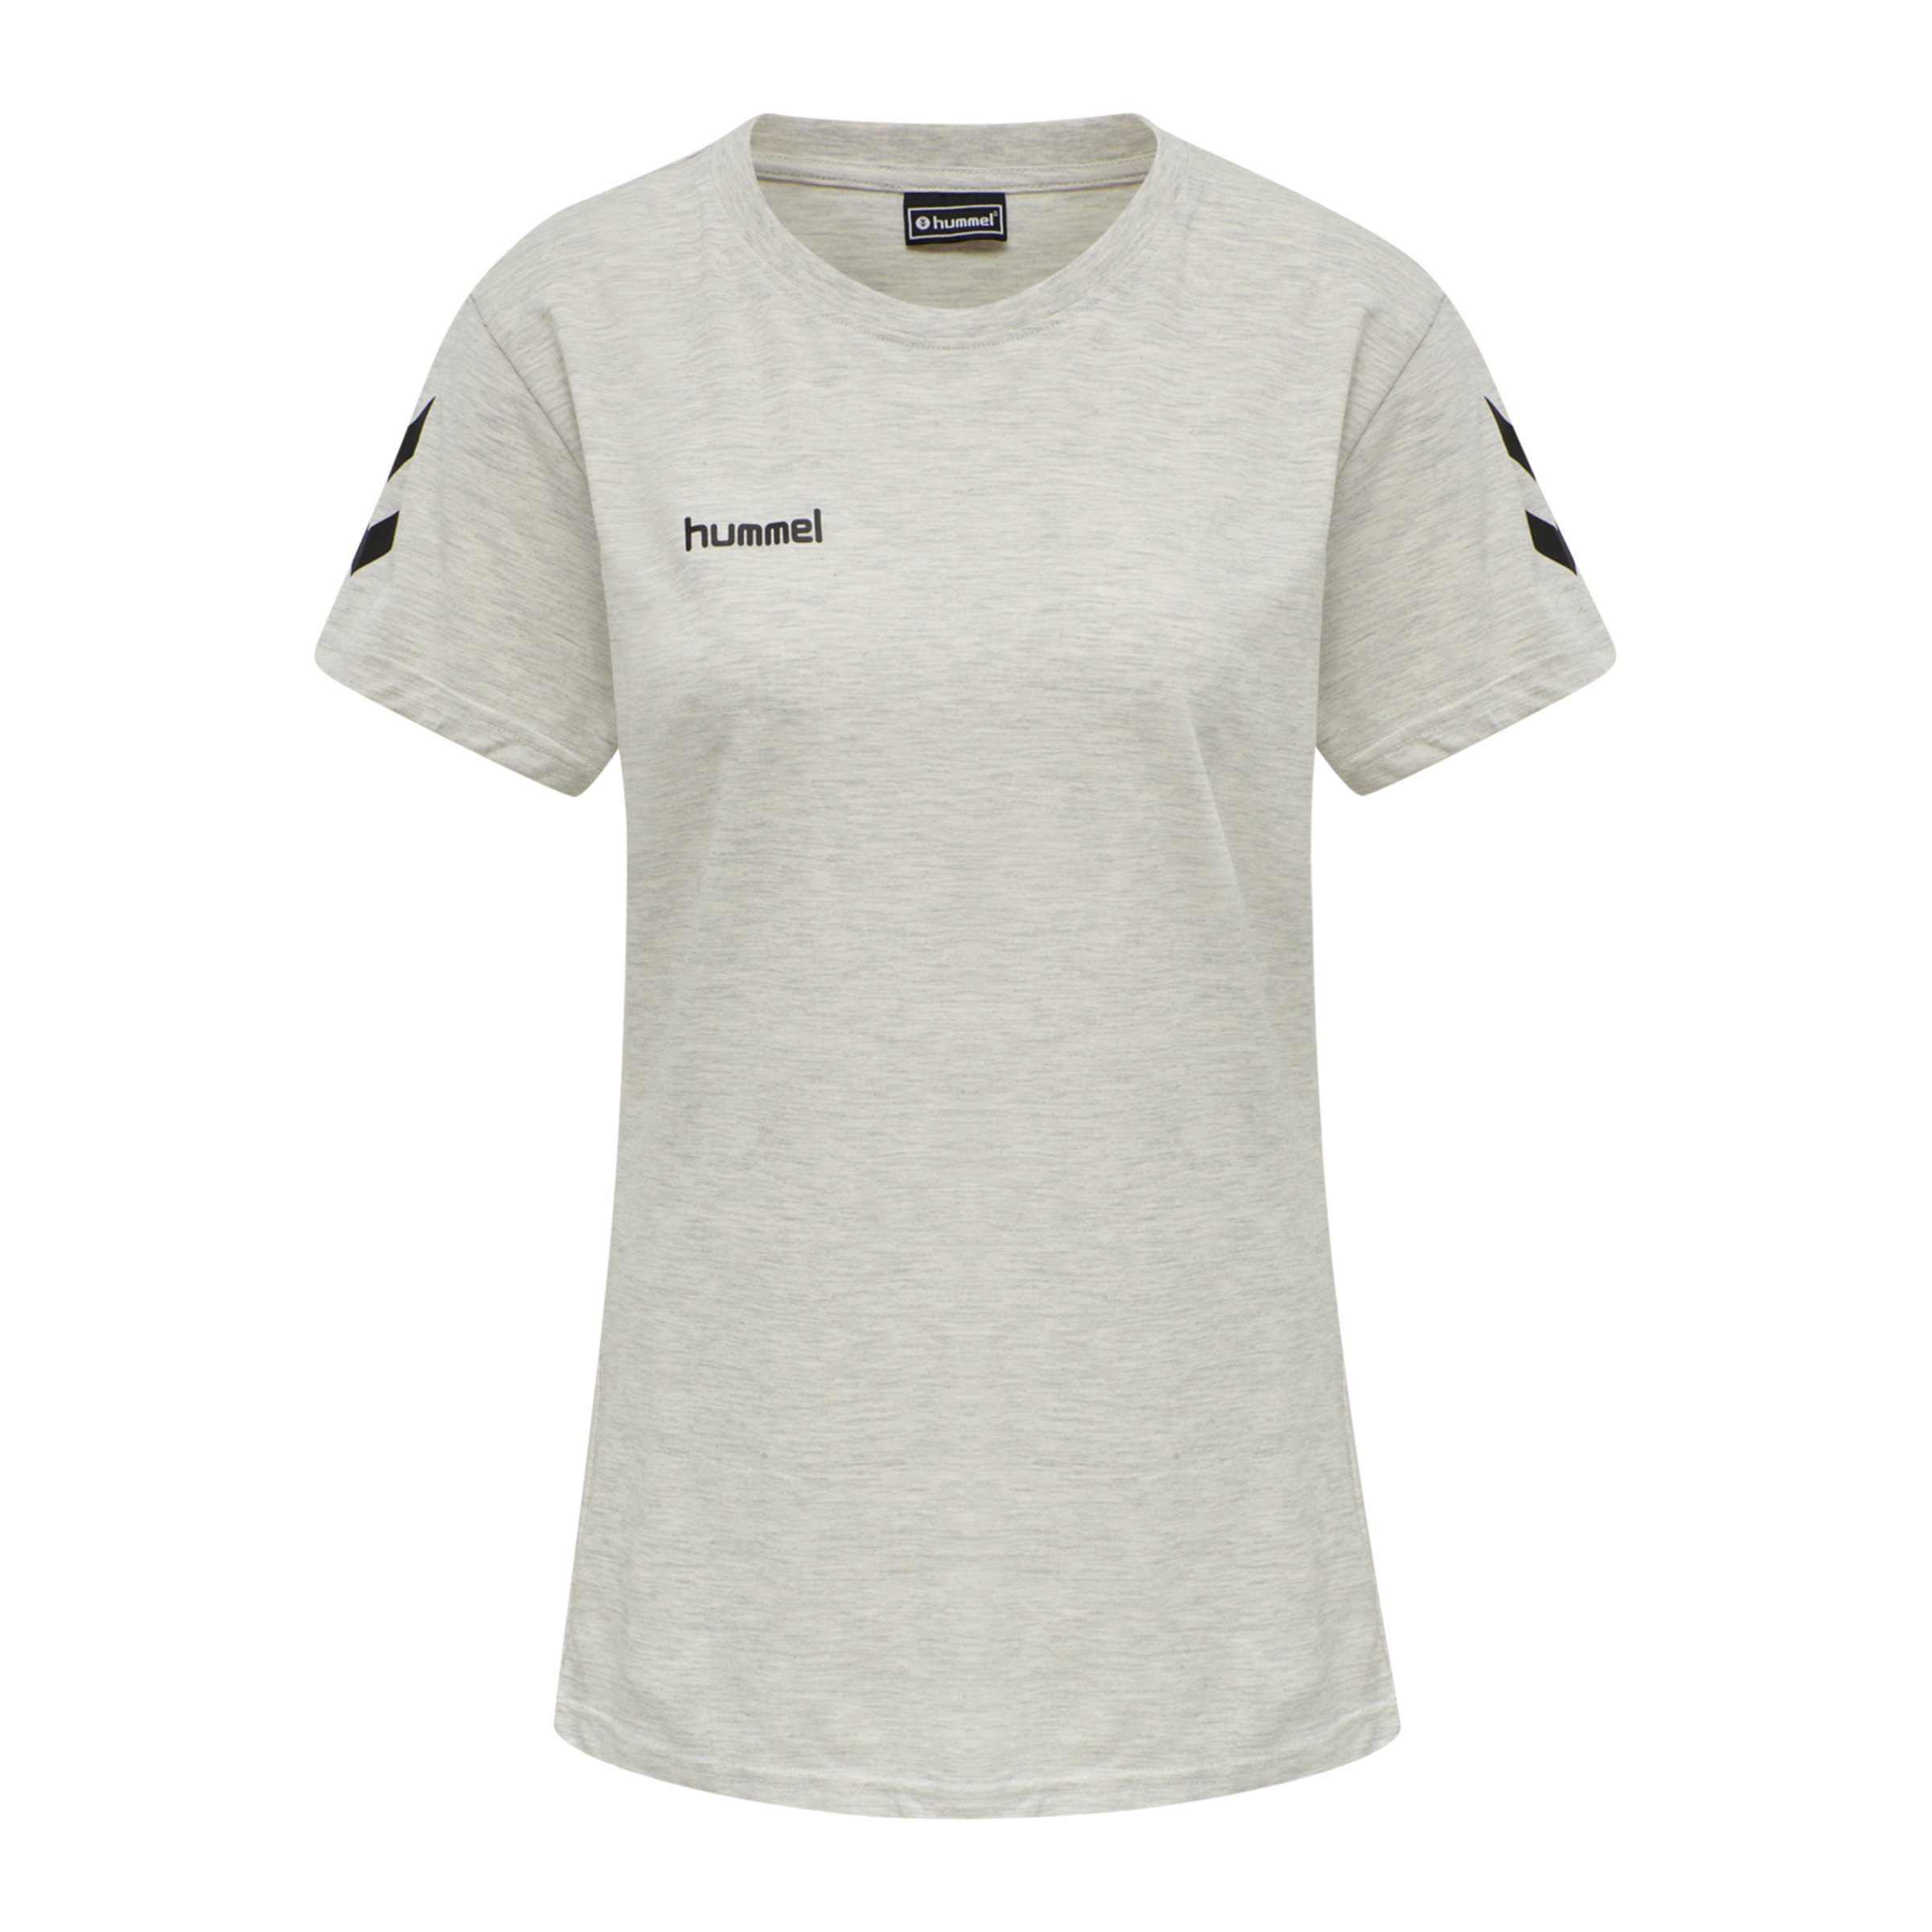 Hummel Cotton T-Shirt beige Damen Grau F9158